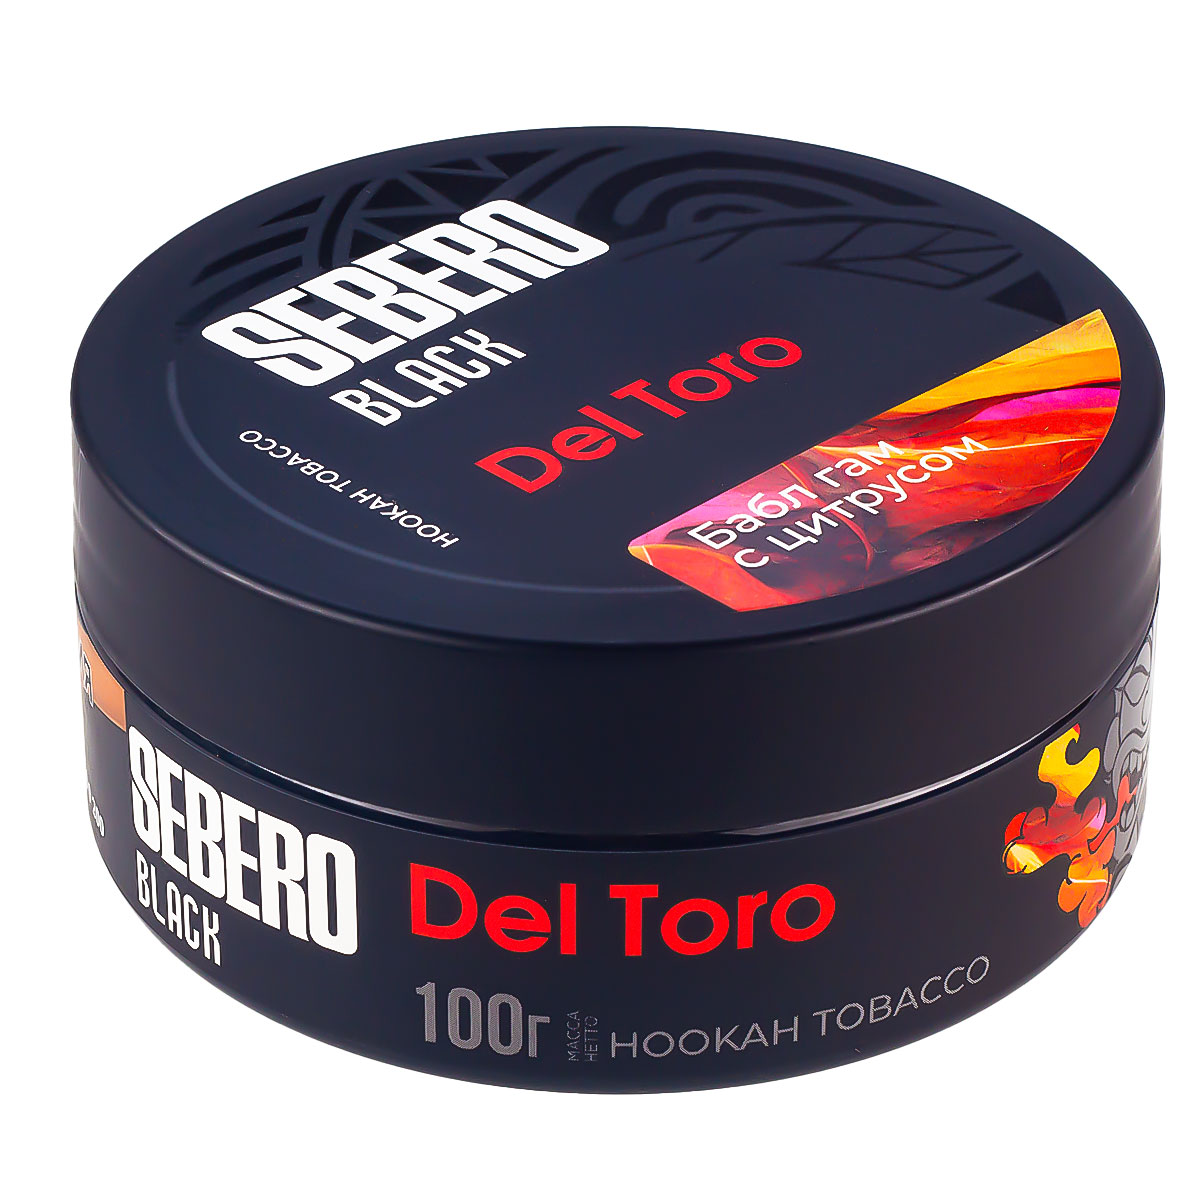 Табак для кальяна - Sebero black - Del Toro ( с ароматом баблгам грейпфрут ) - 100 г